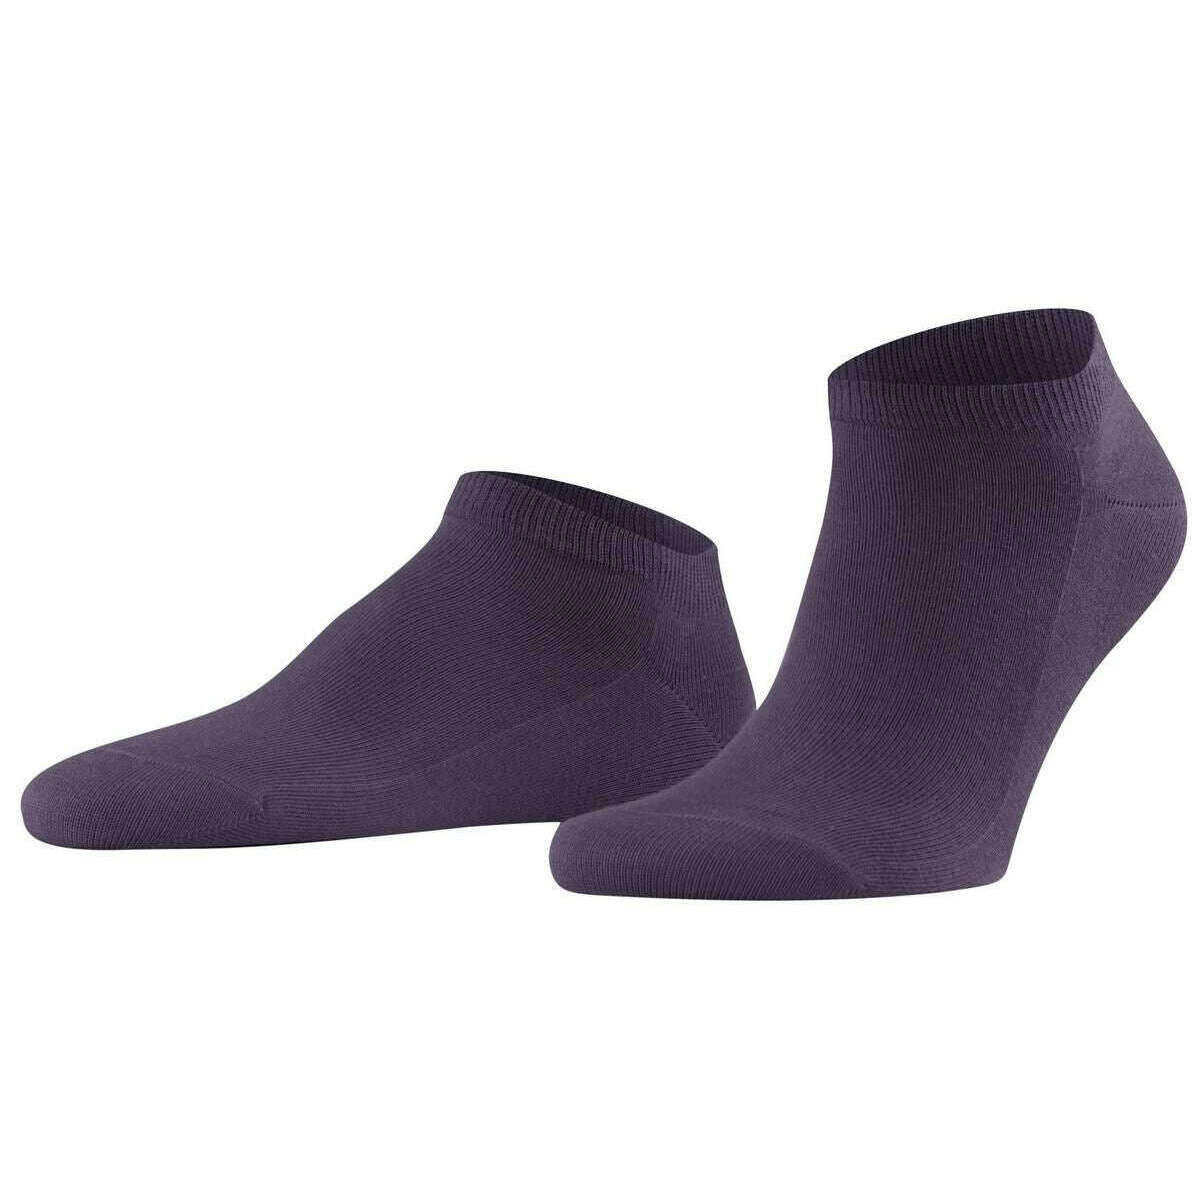 Falke Family Sneaker Socks - Amethyst Lilac